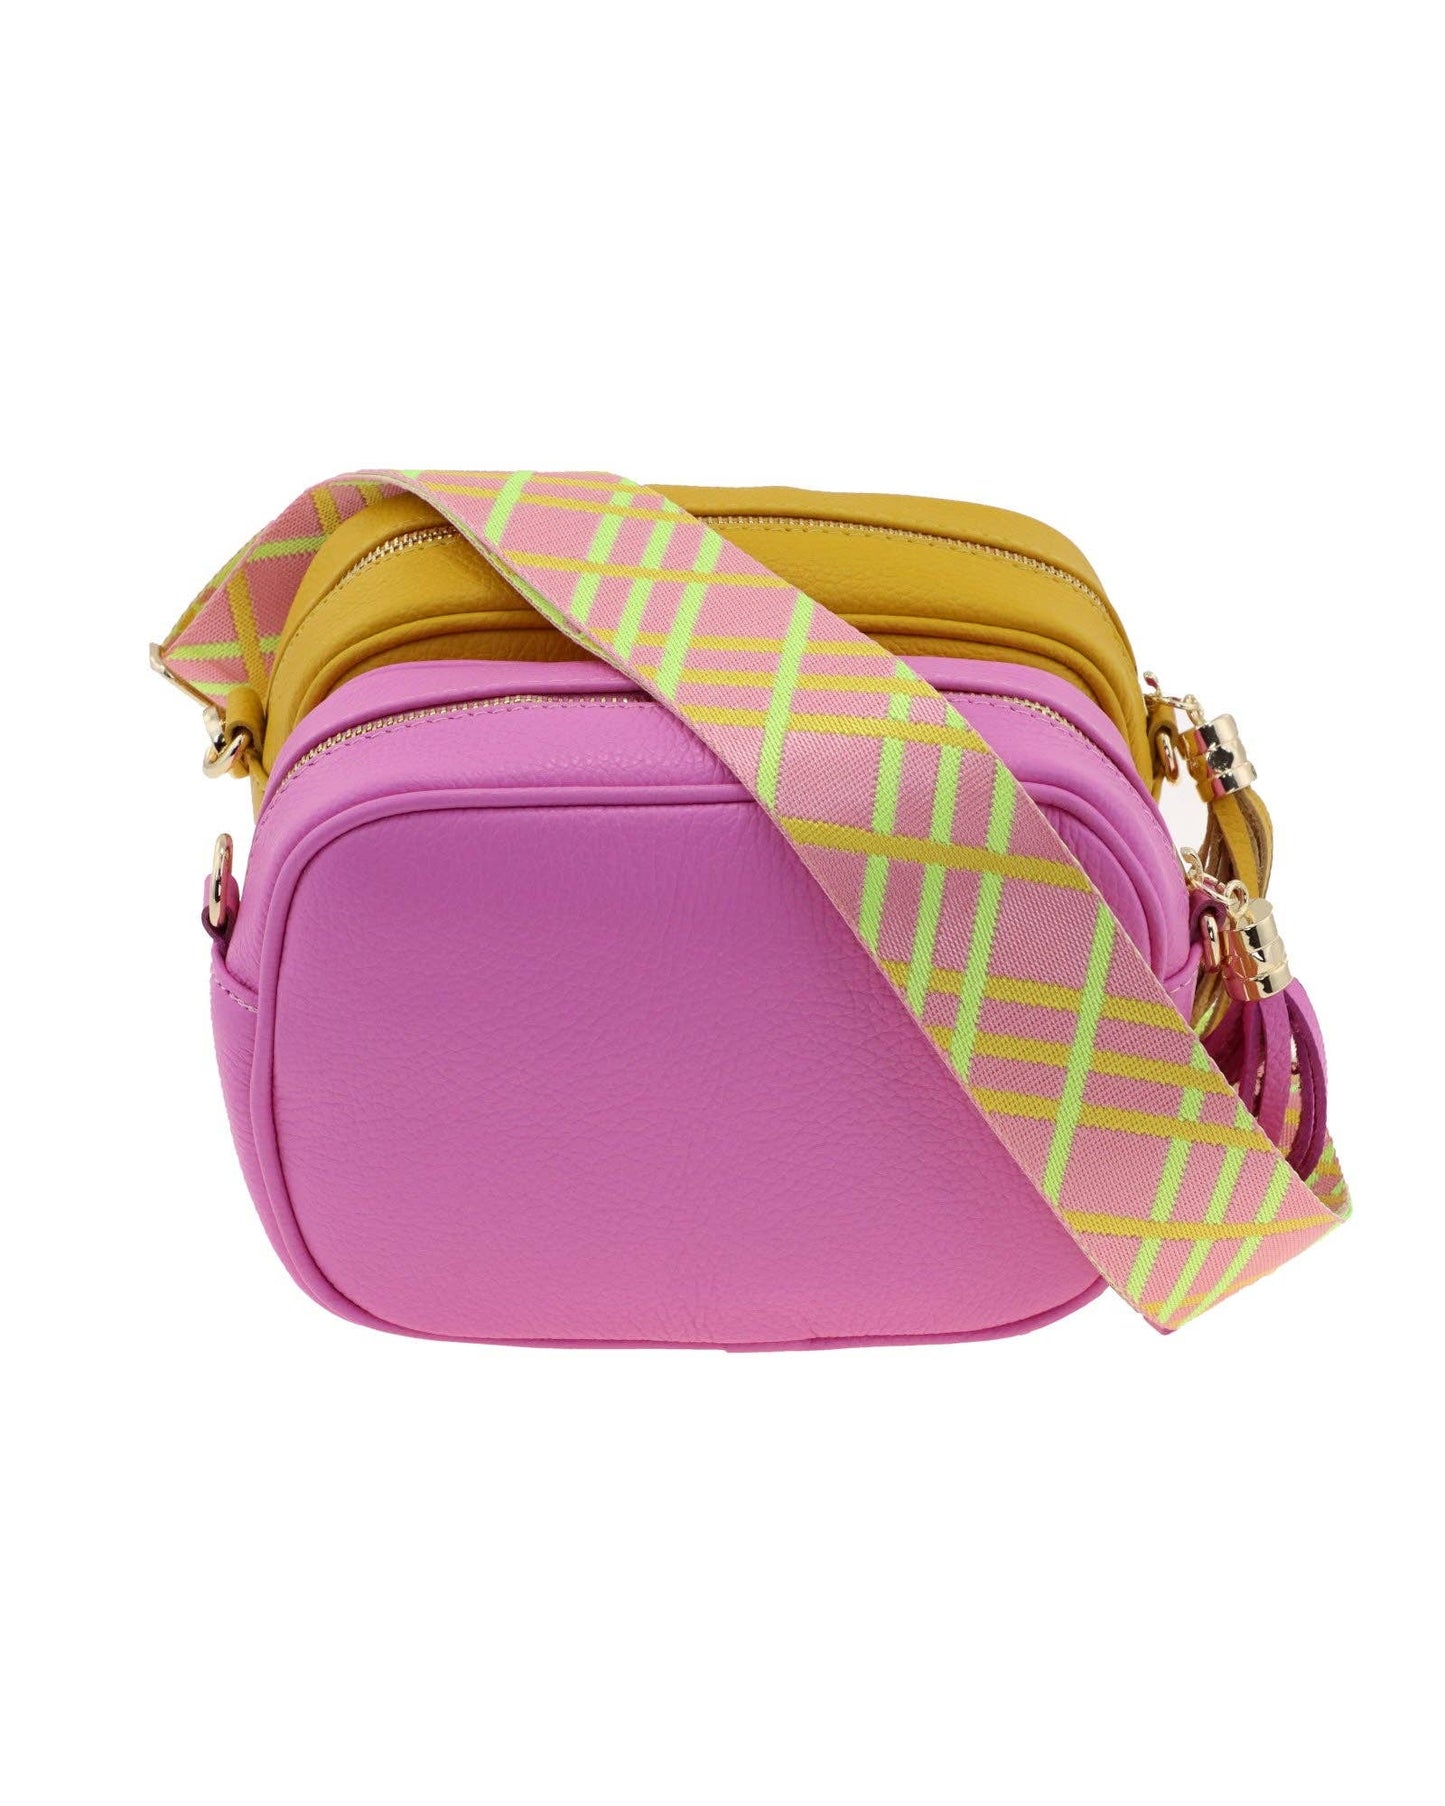 Cadenza Bag Strap Tartan: One Size / Pink Tartan